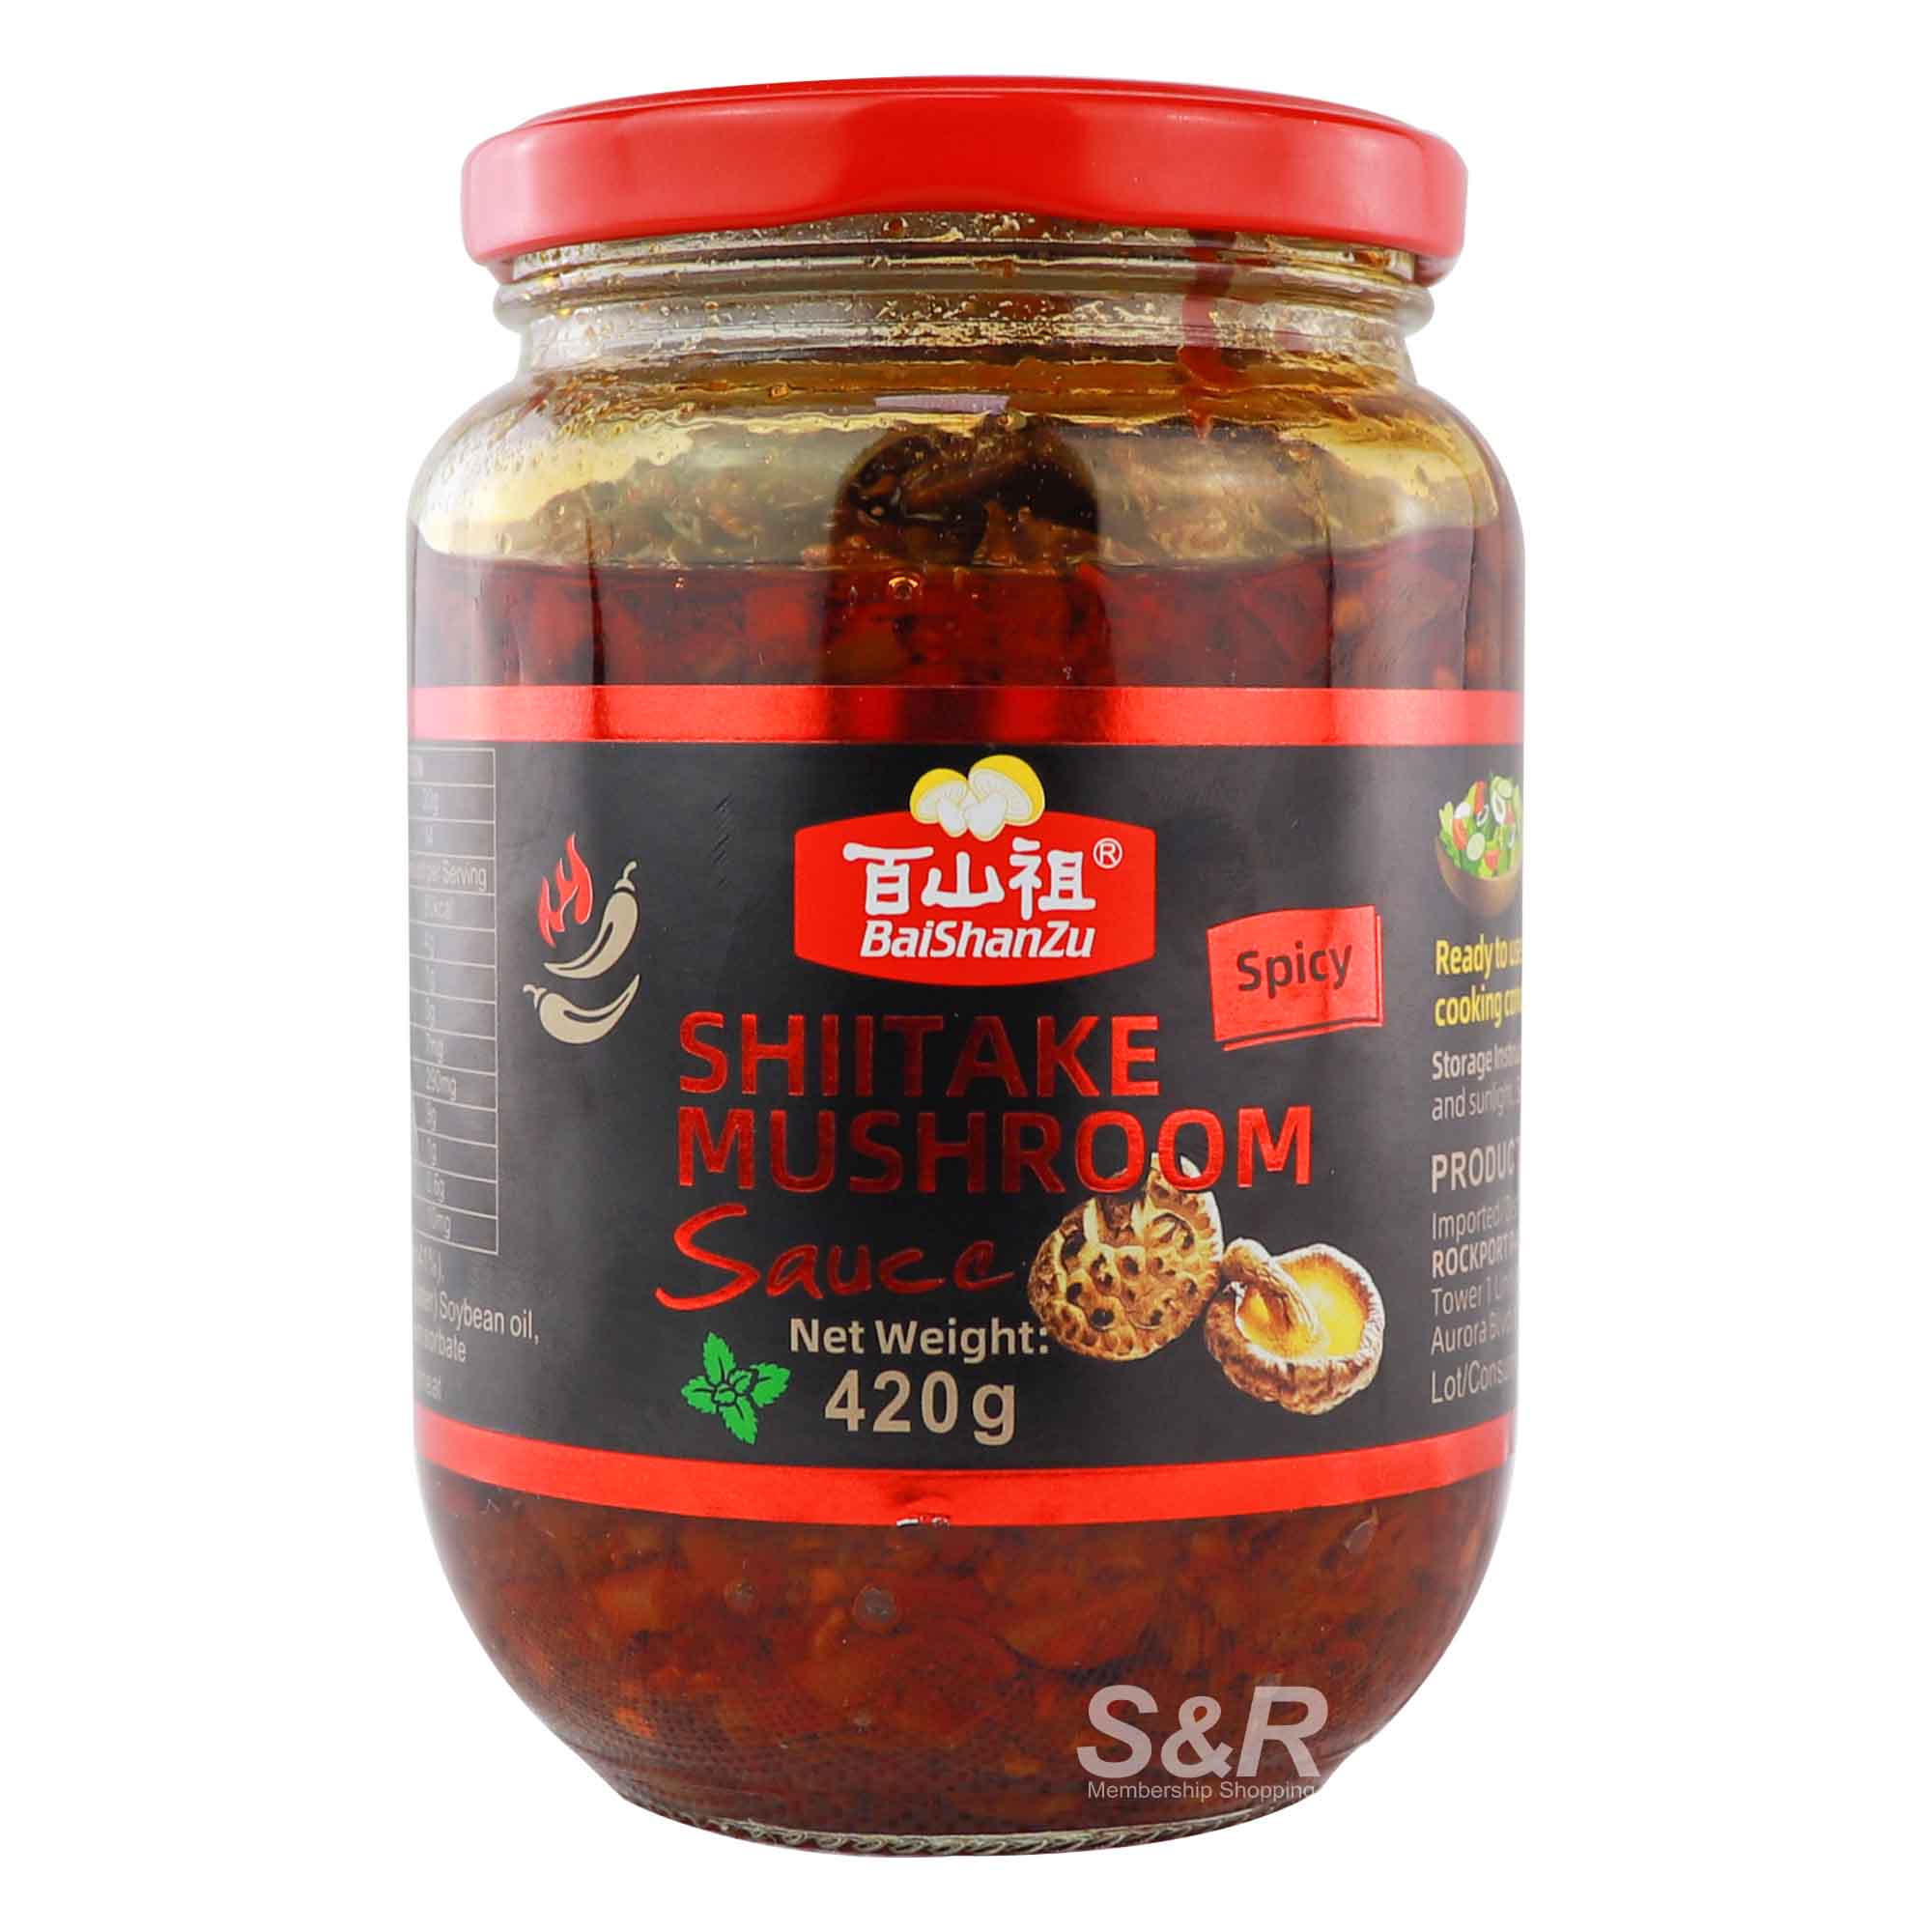 BaiShanzu Spicy Shiitake Mushroom Sauce 420g